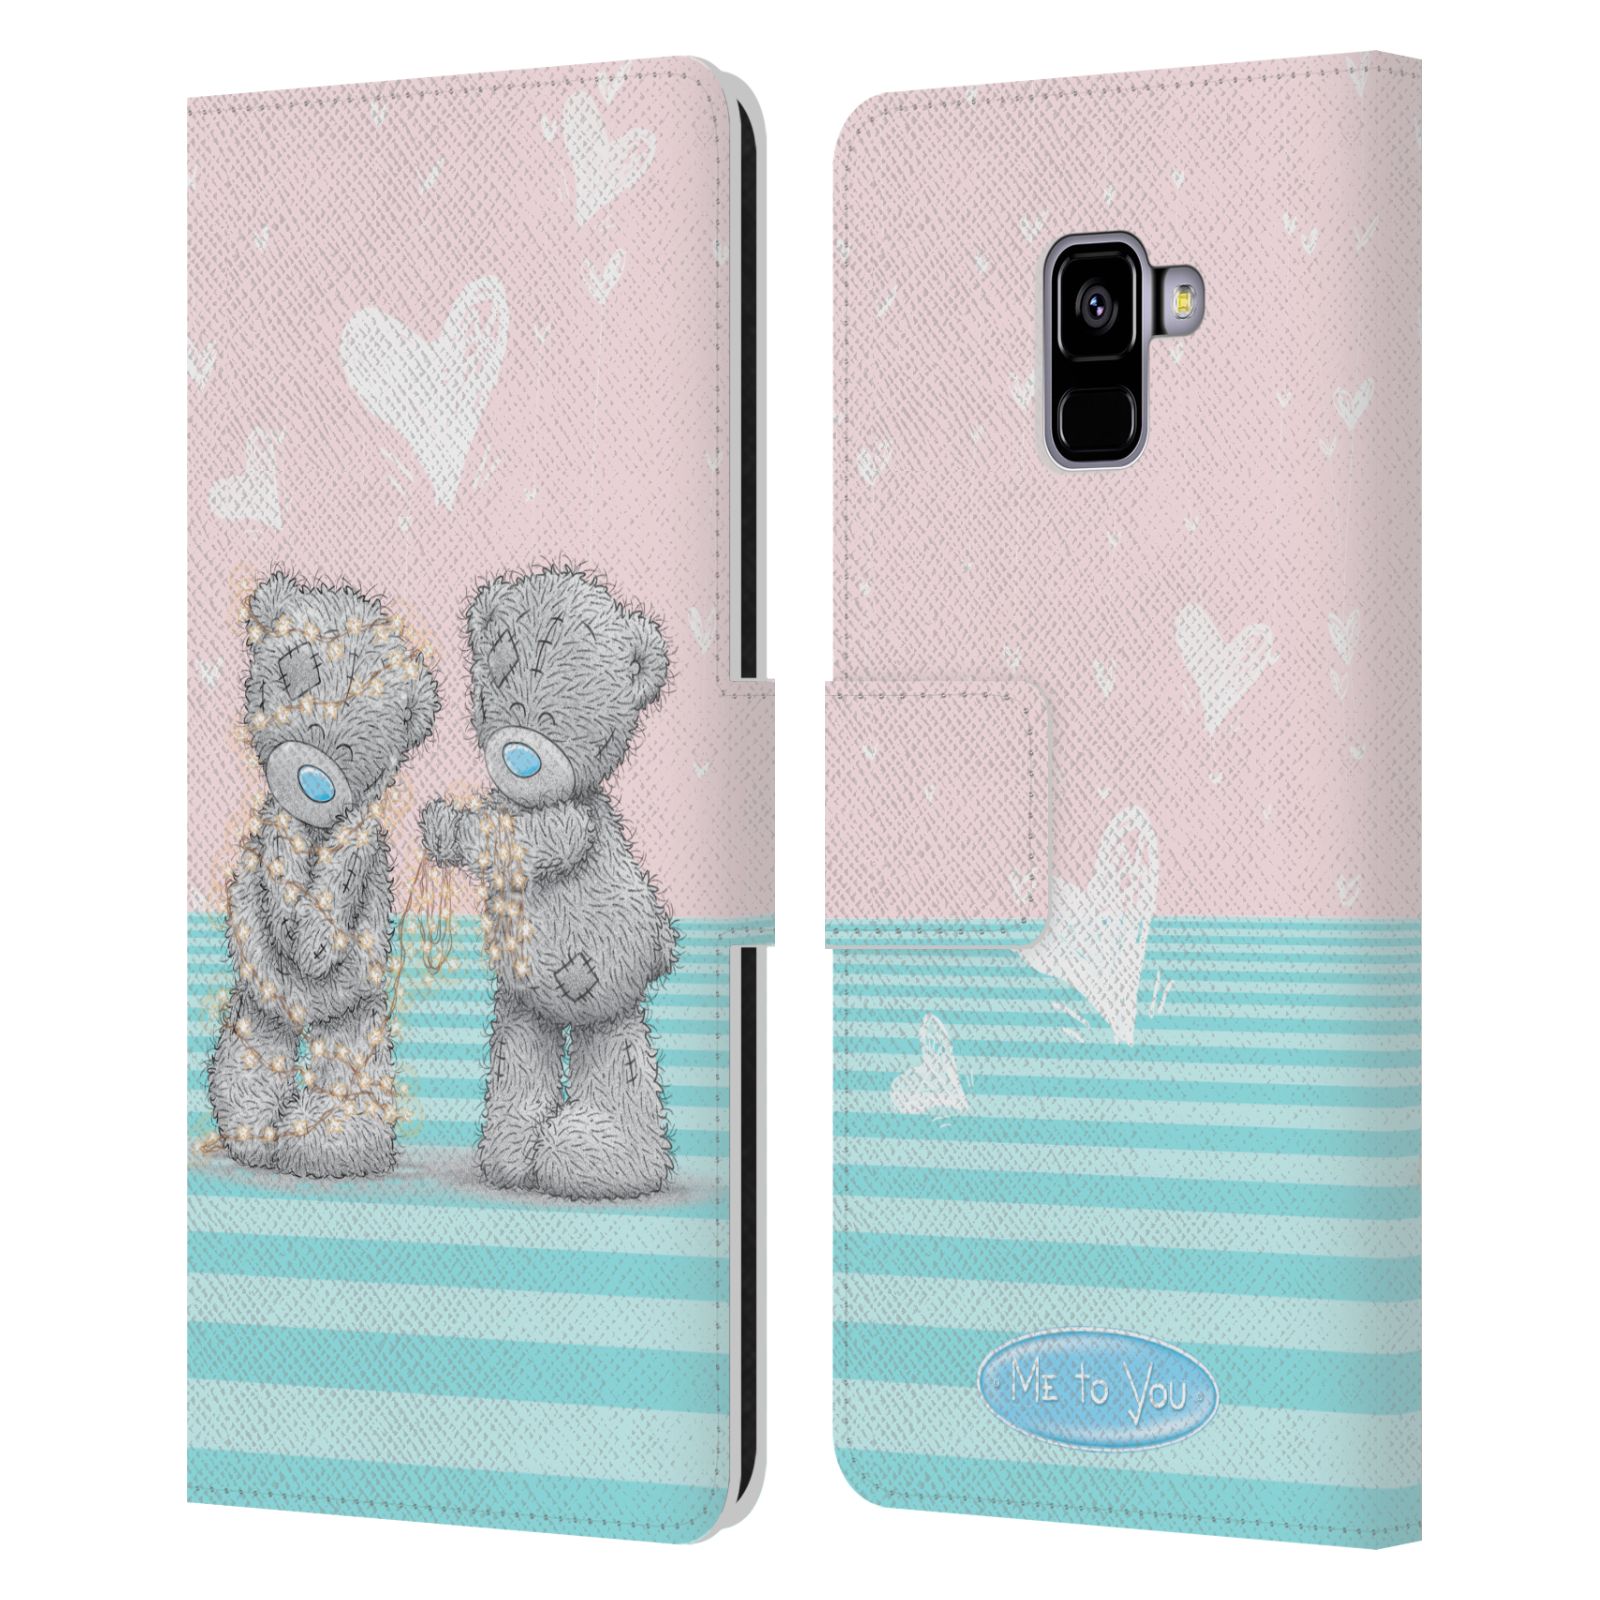 Pouzdro na mobil Samsung Galaxy A8+ 2018 - HEAD CASE - Me To You - Zamilovaní medvídci